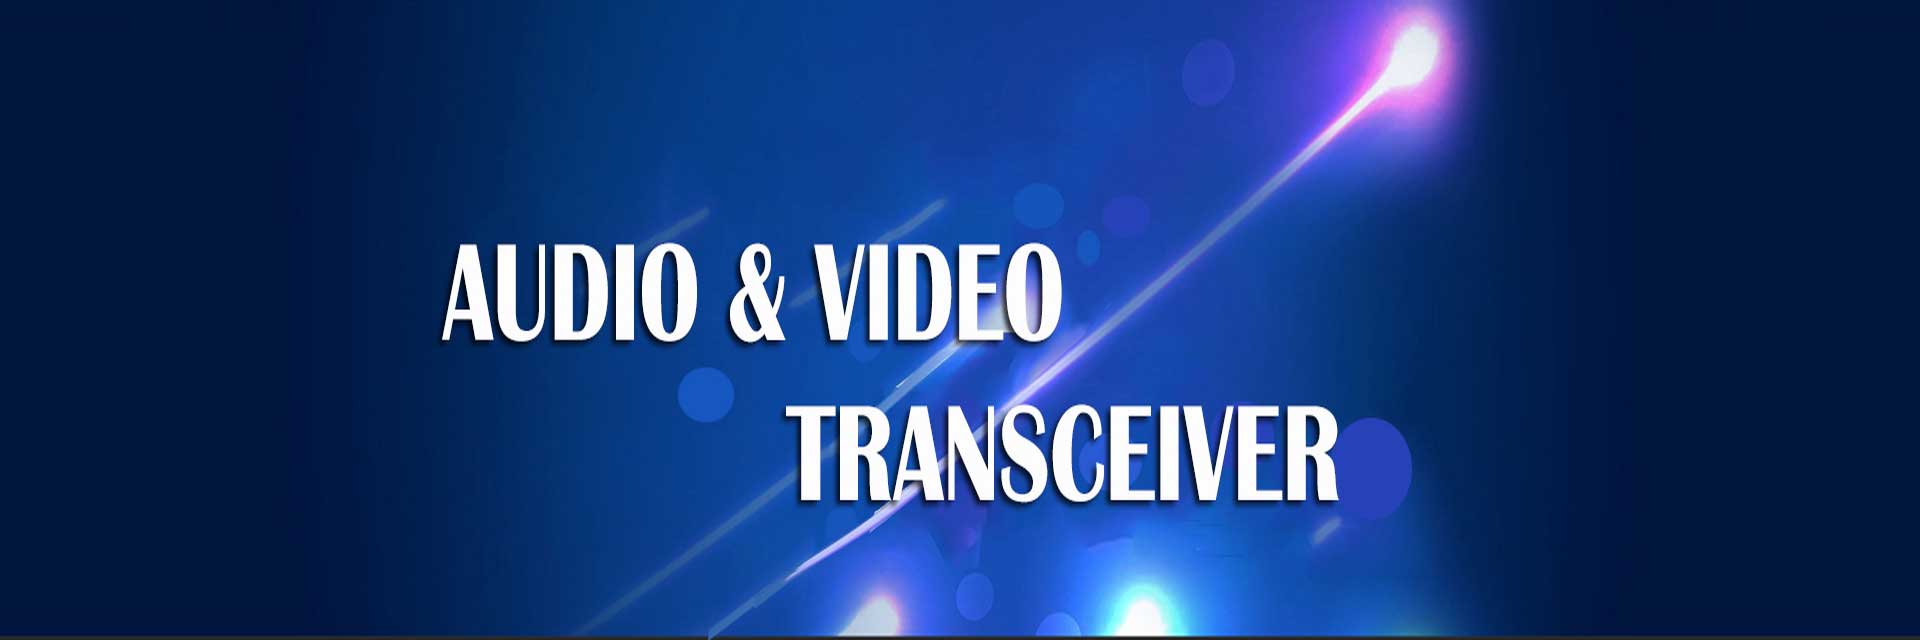 audio&video transceiver